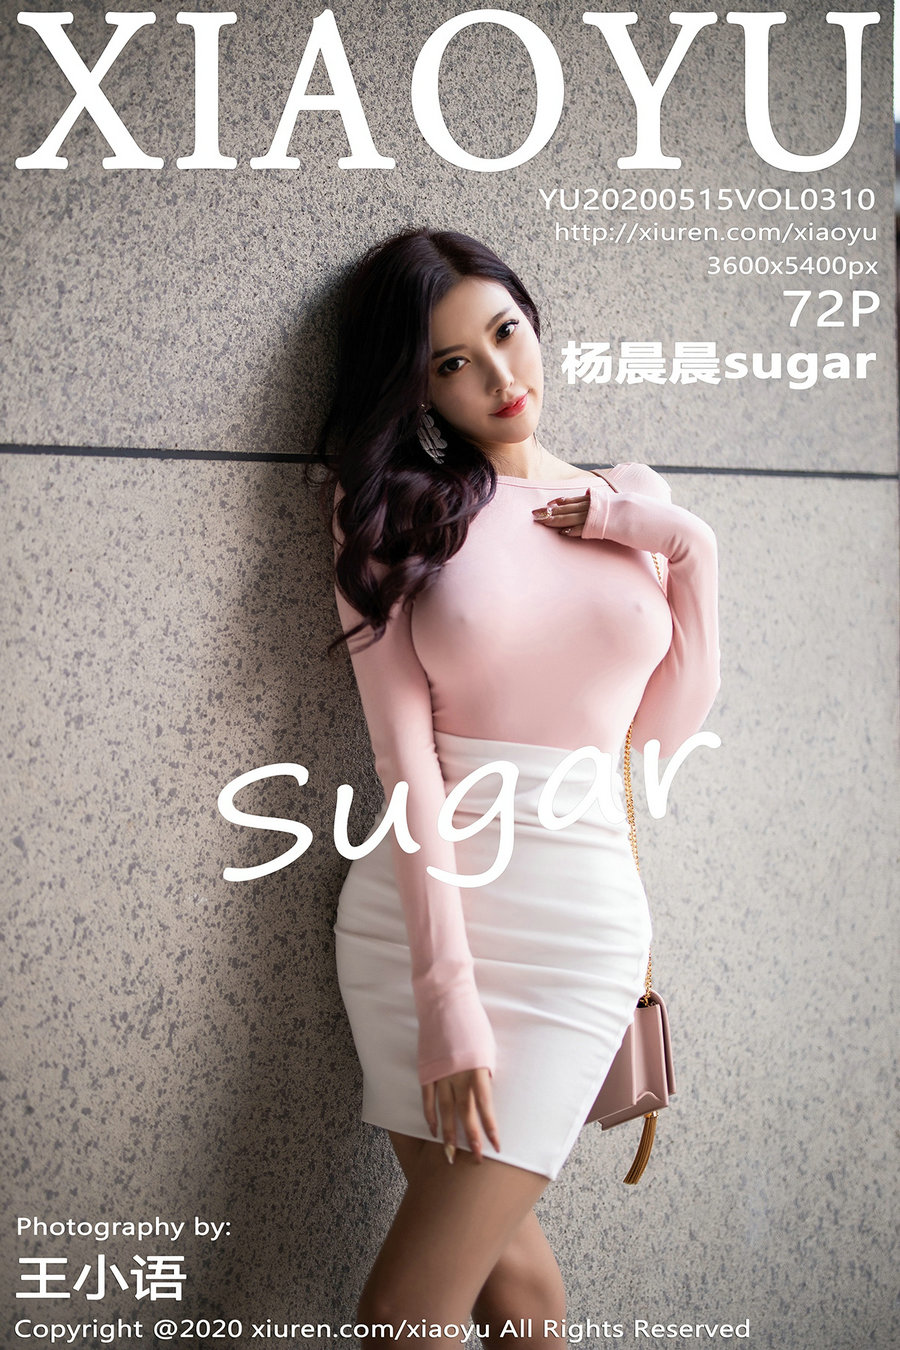 [XIAOYU]语画界 2020.05.15 Vol.310 杨晨晨sugar [72P436MB]